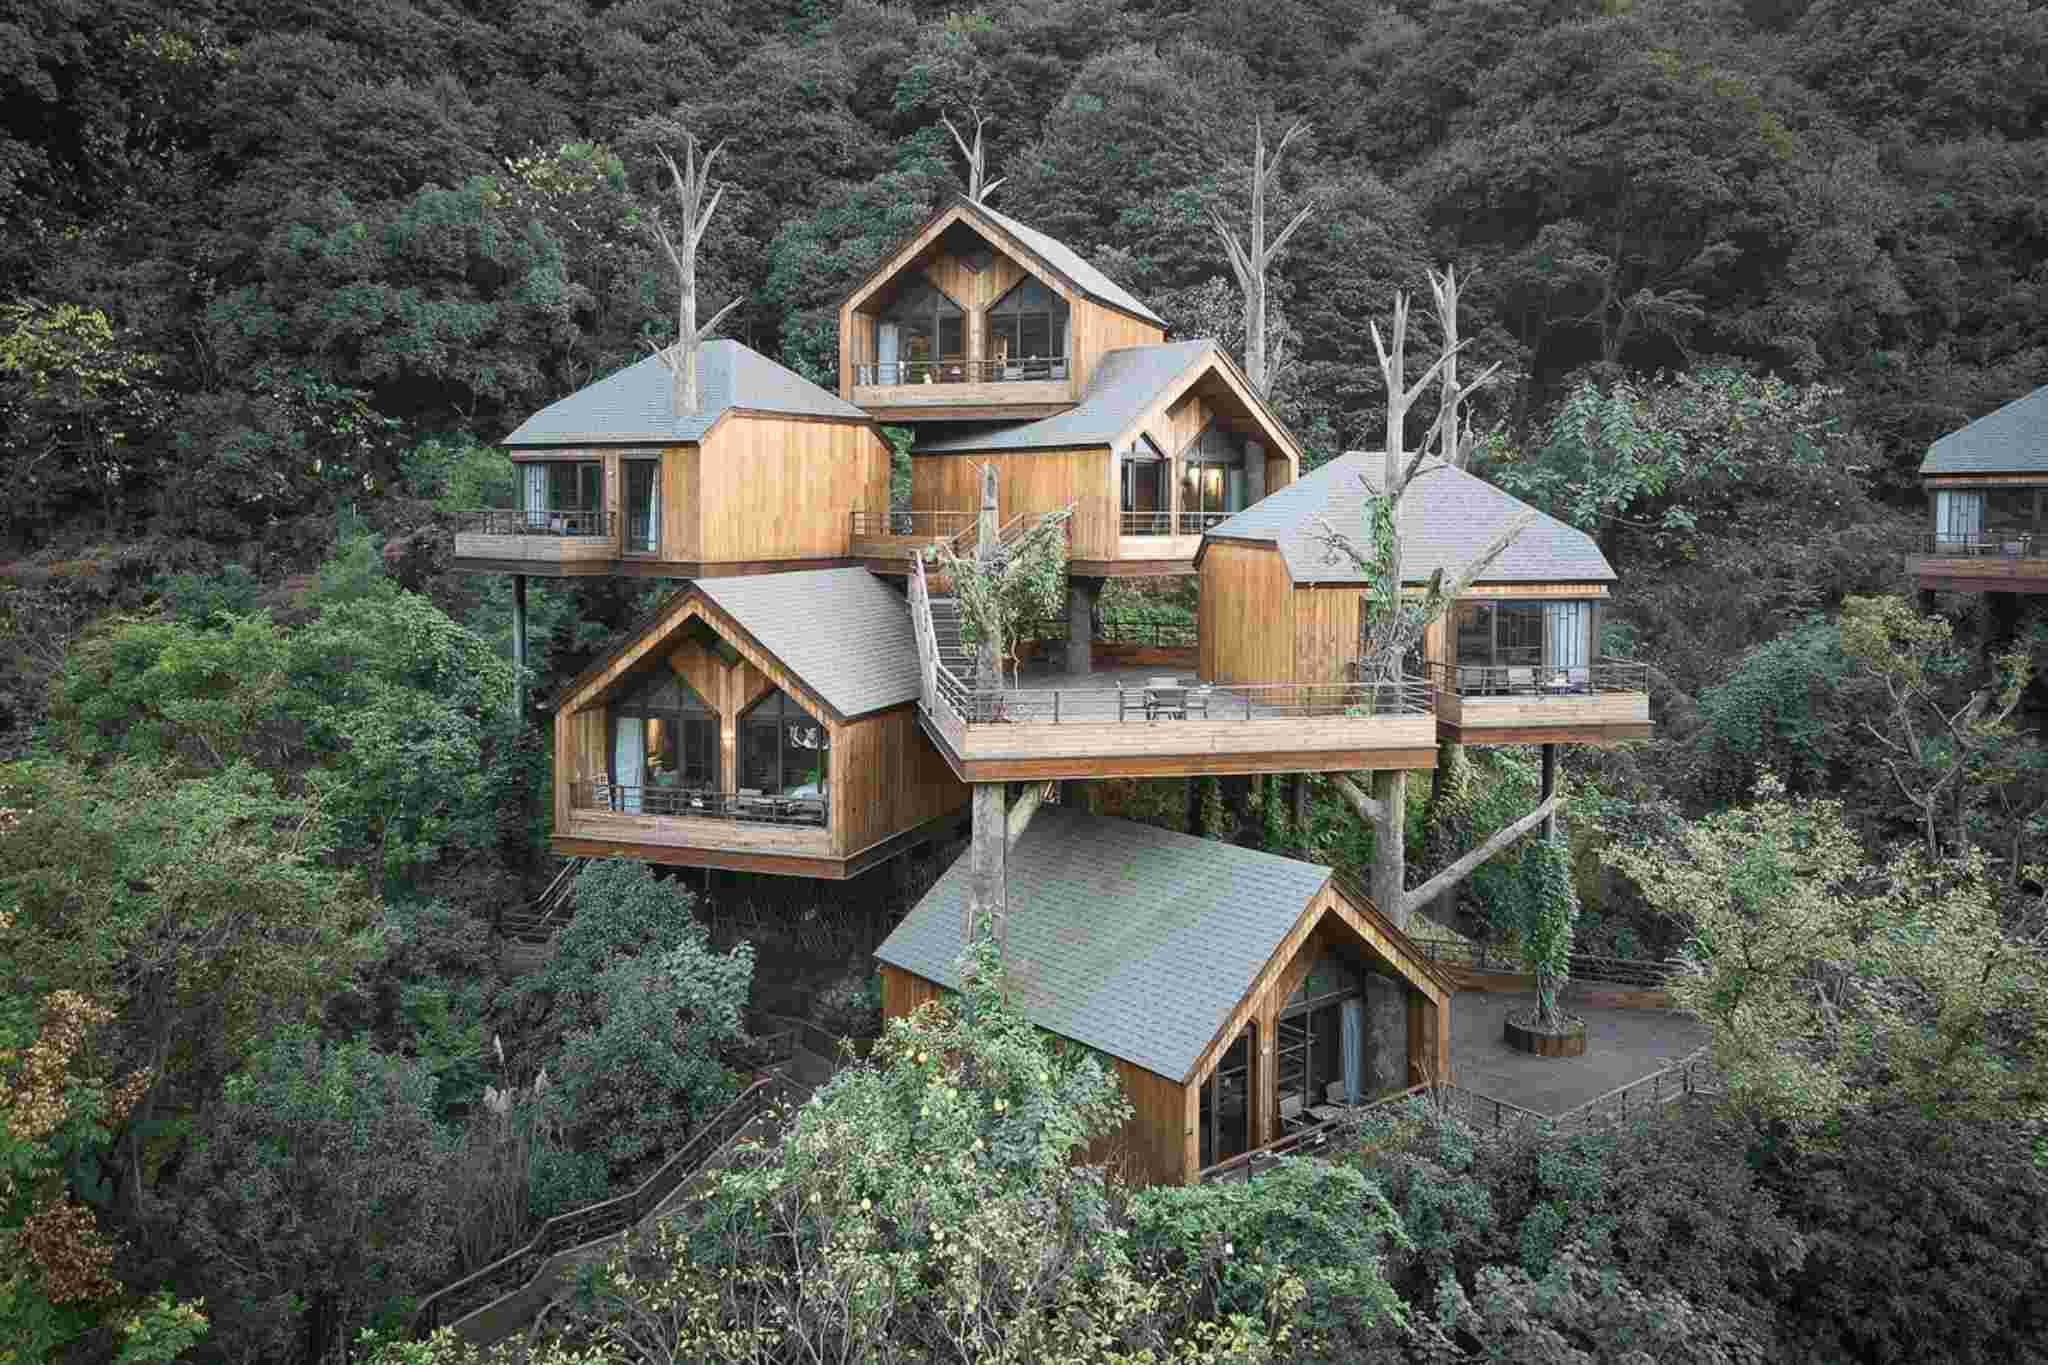 thiết kế homestay nhà vườn kiểu nhà trên cây 